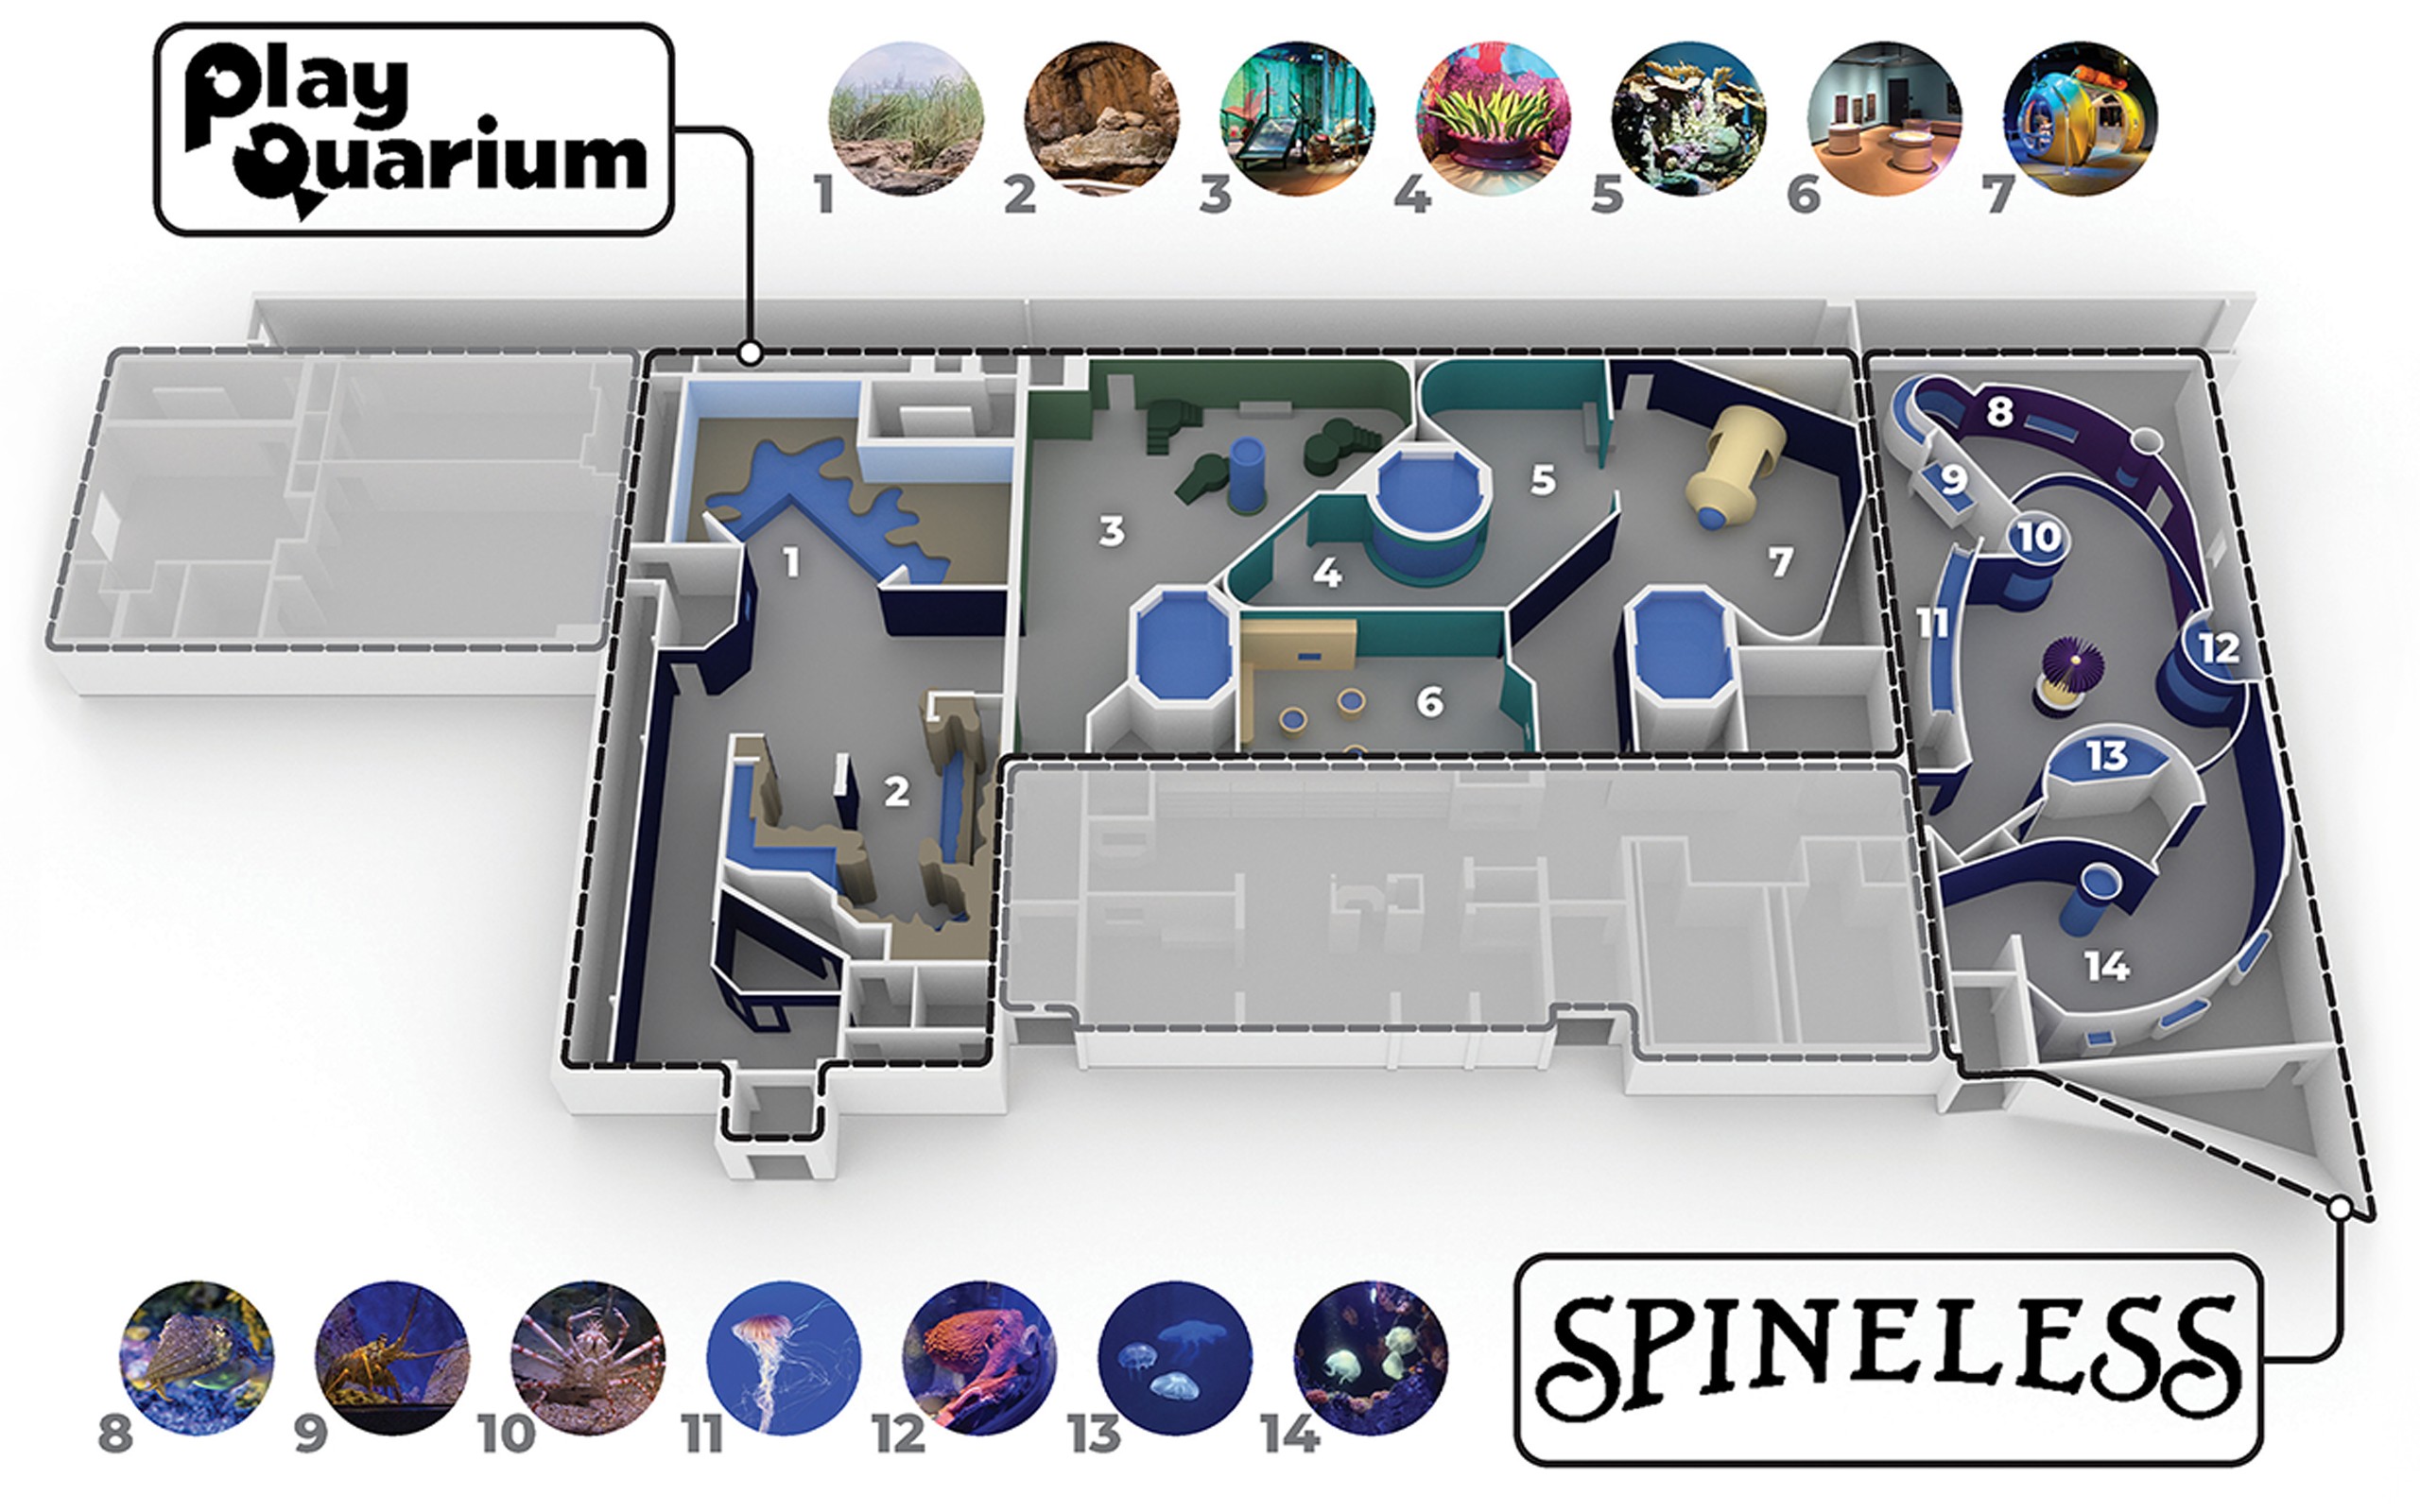 New York Aquarium Spineless & PlayQuarium exhibition diagram